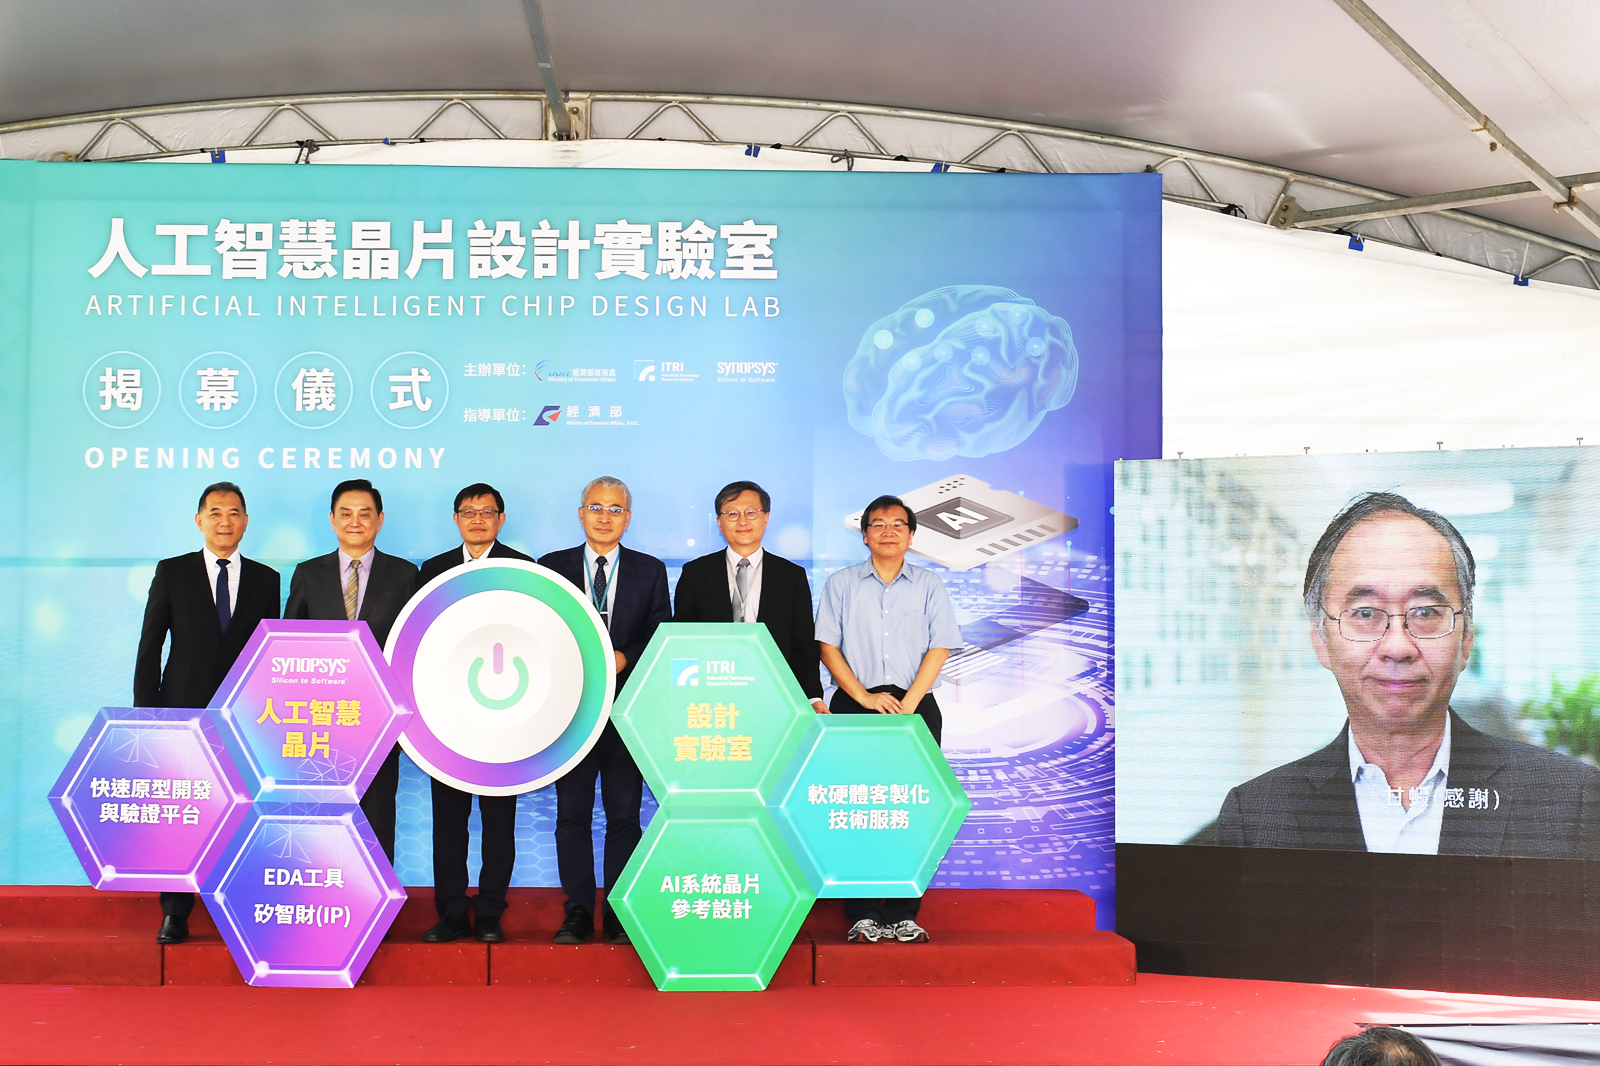 工研院與新思科技攜手合作成立「人工智慧晶片設計實驗室」，提供AI晶片設計之基礎軟硬體資源，加速臺灣AI晶片發展。